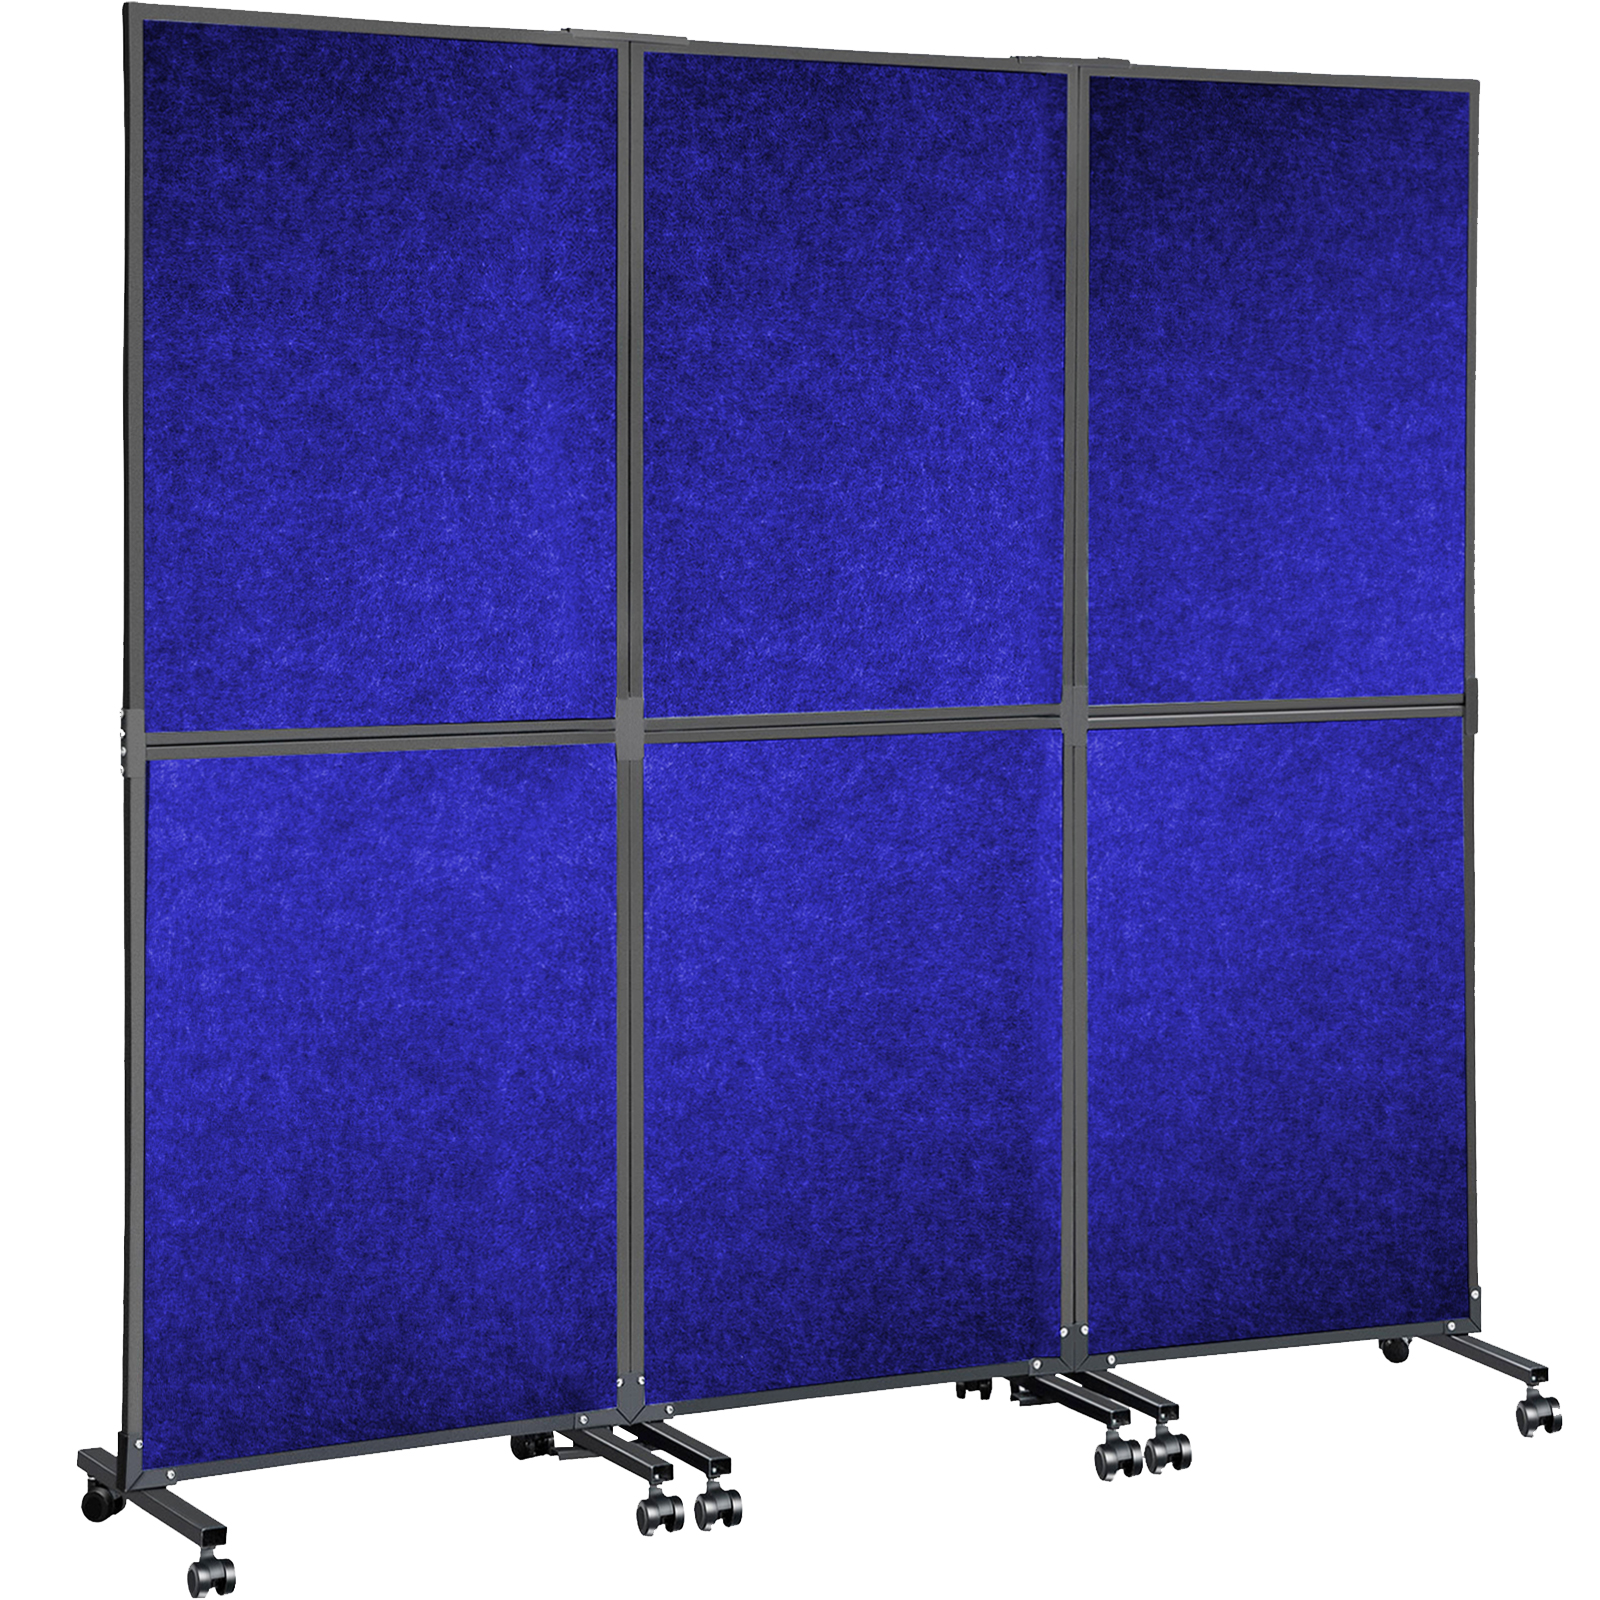 Vevor Acoustic Room Divider Office Partition Panel 72" X 66" 3 Pack In Navy Blue от Vevor Many GEOs